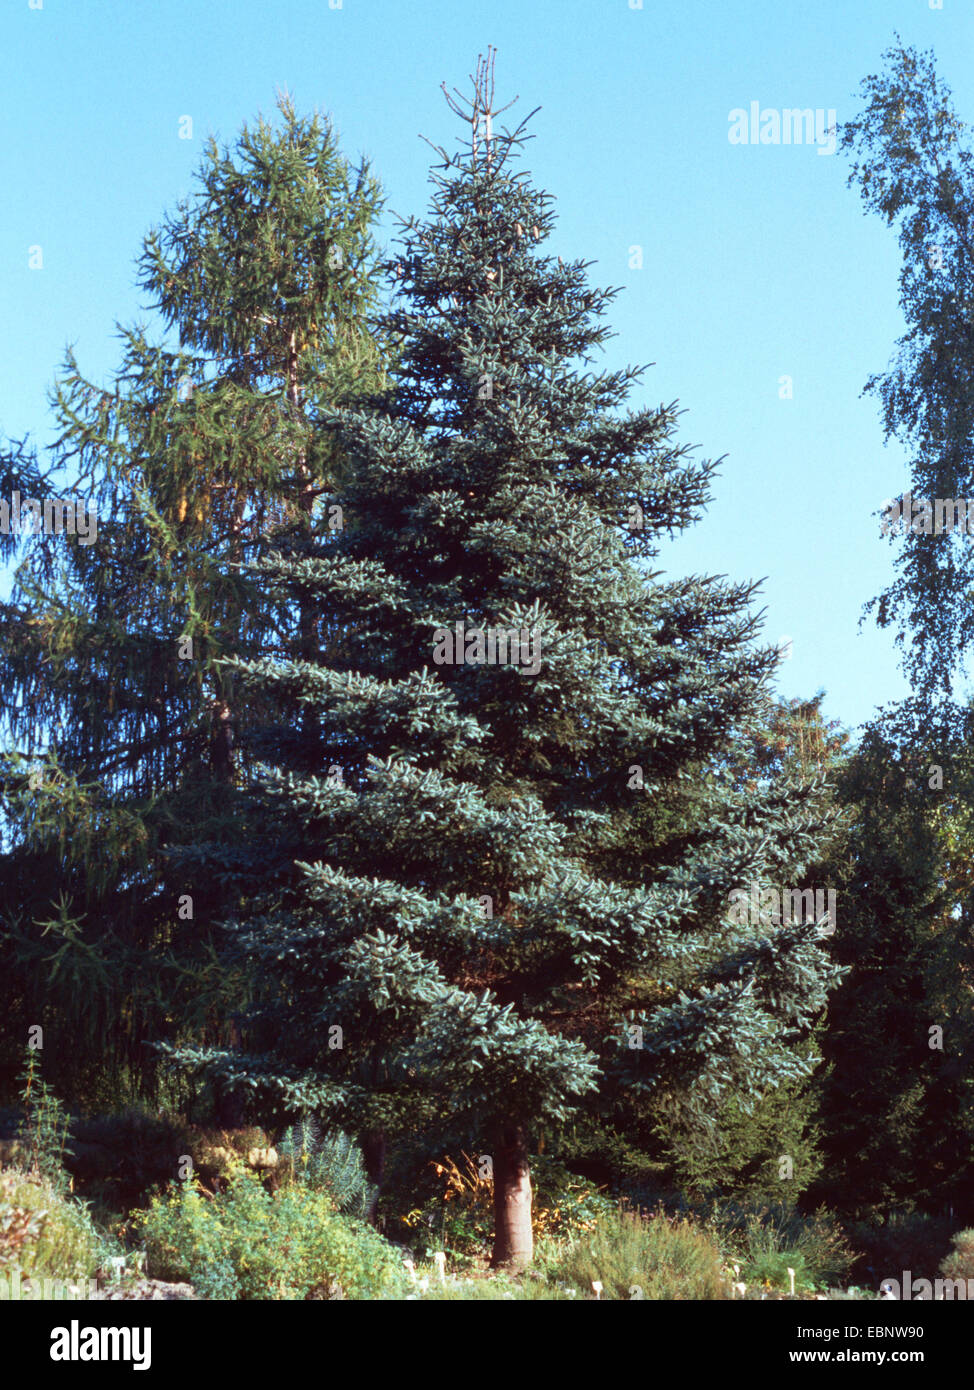 Blue Spanish fir (Abies pinsapo 'Glauca', Abies pinsapo Glauca), in a park Stock Photo